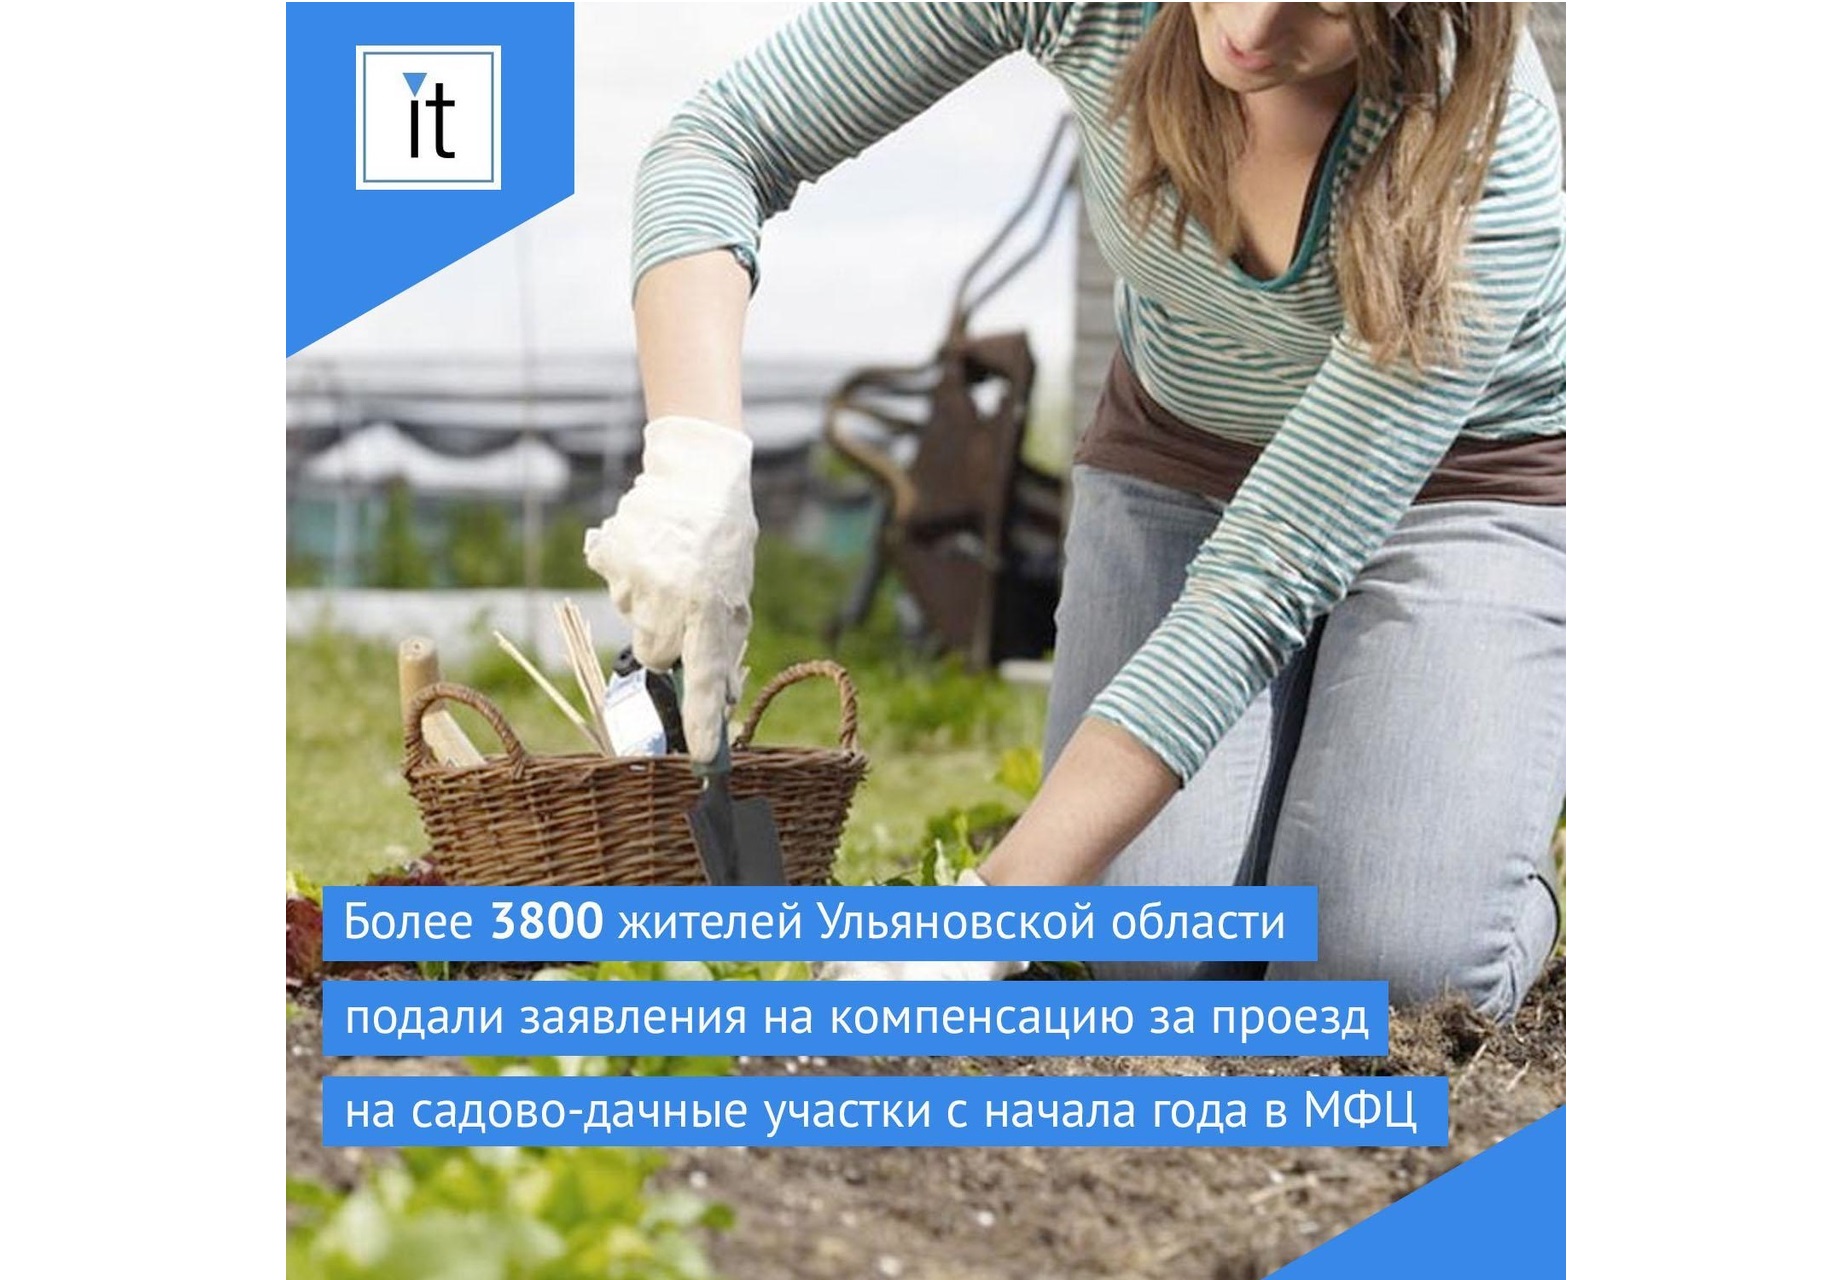 Более 3800 жителей Ульяновской области подали заявления на компенсацию за проезд на садово-дачные участки с начала года в МФЦ.